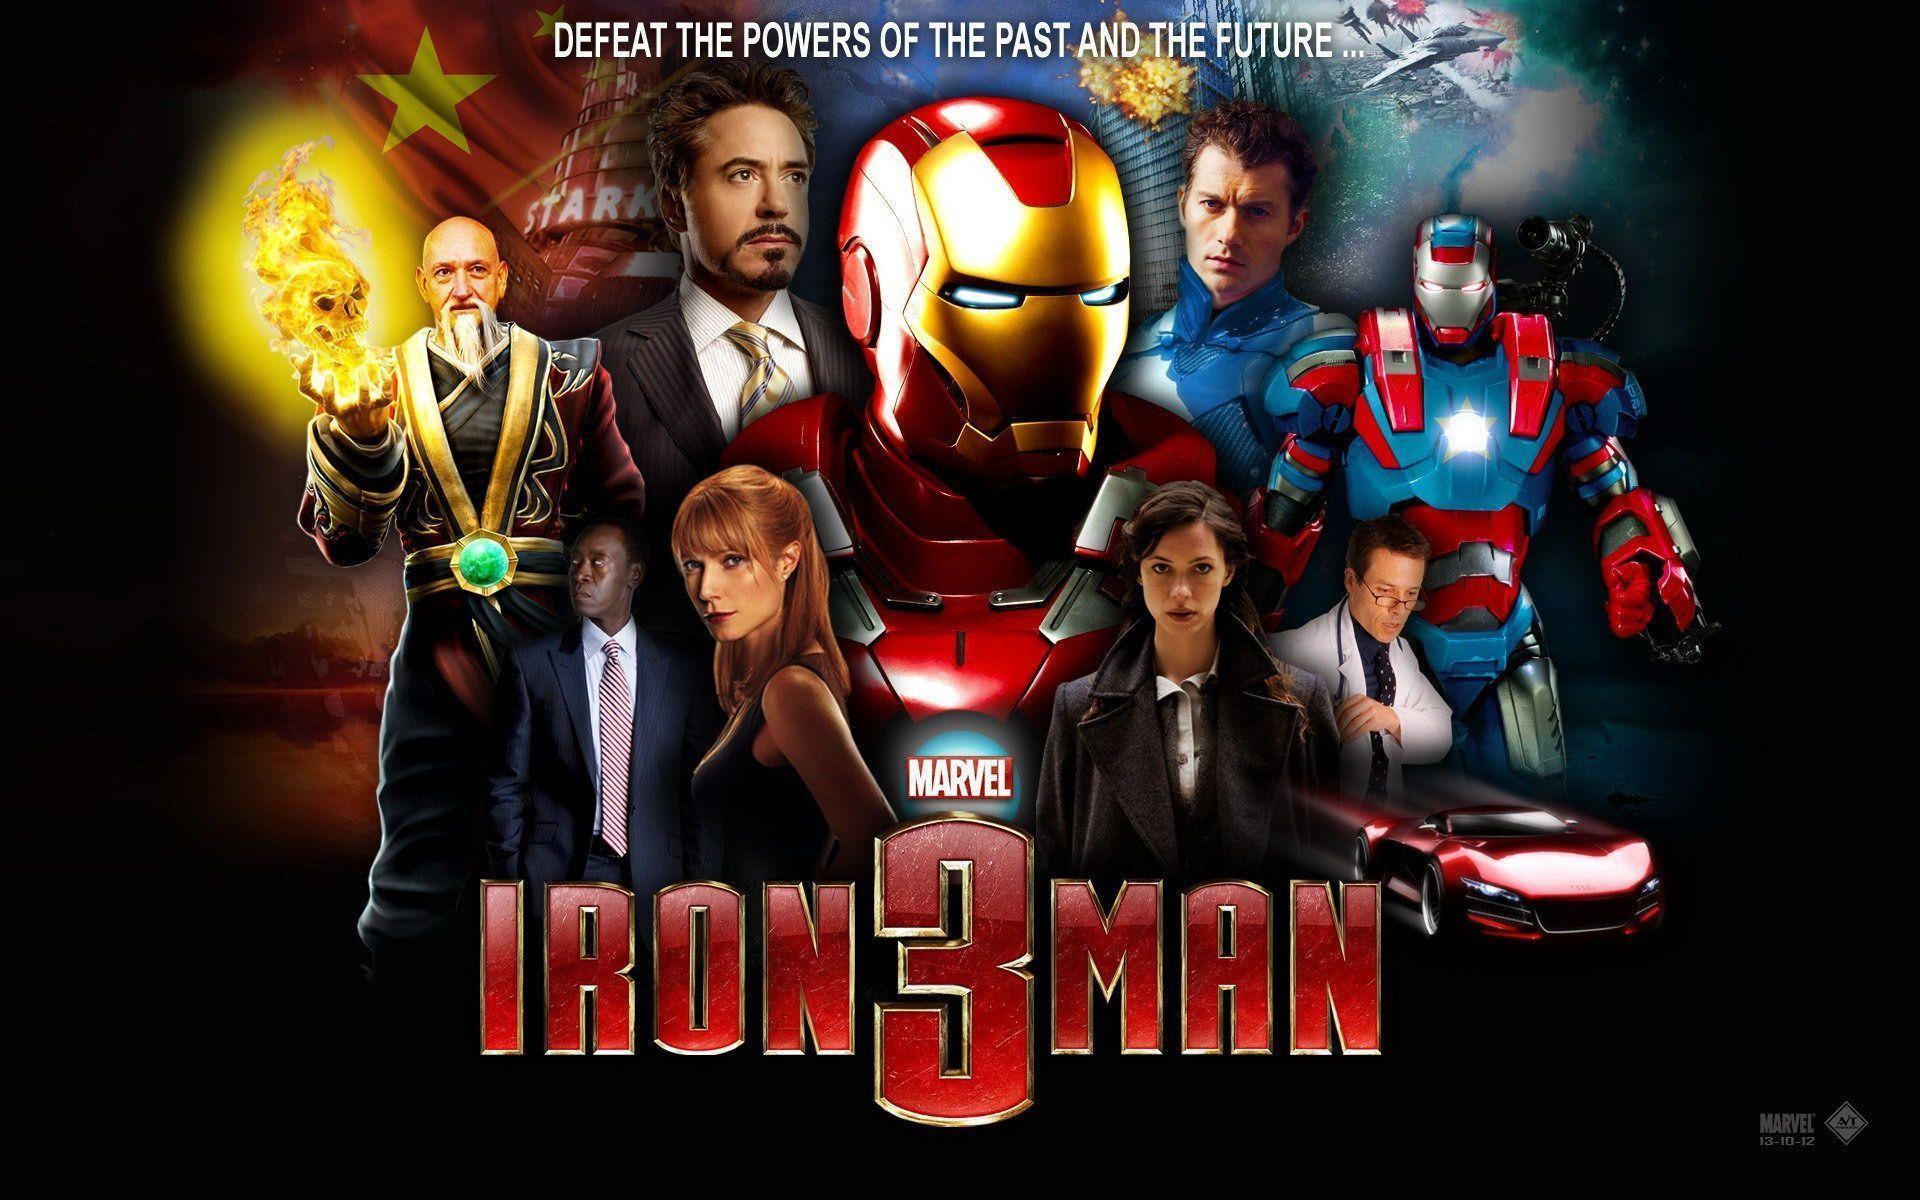 Iron Man iPhone Wallpaper HD Wallpaper. AbstractWallpaperHD